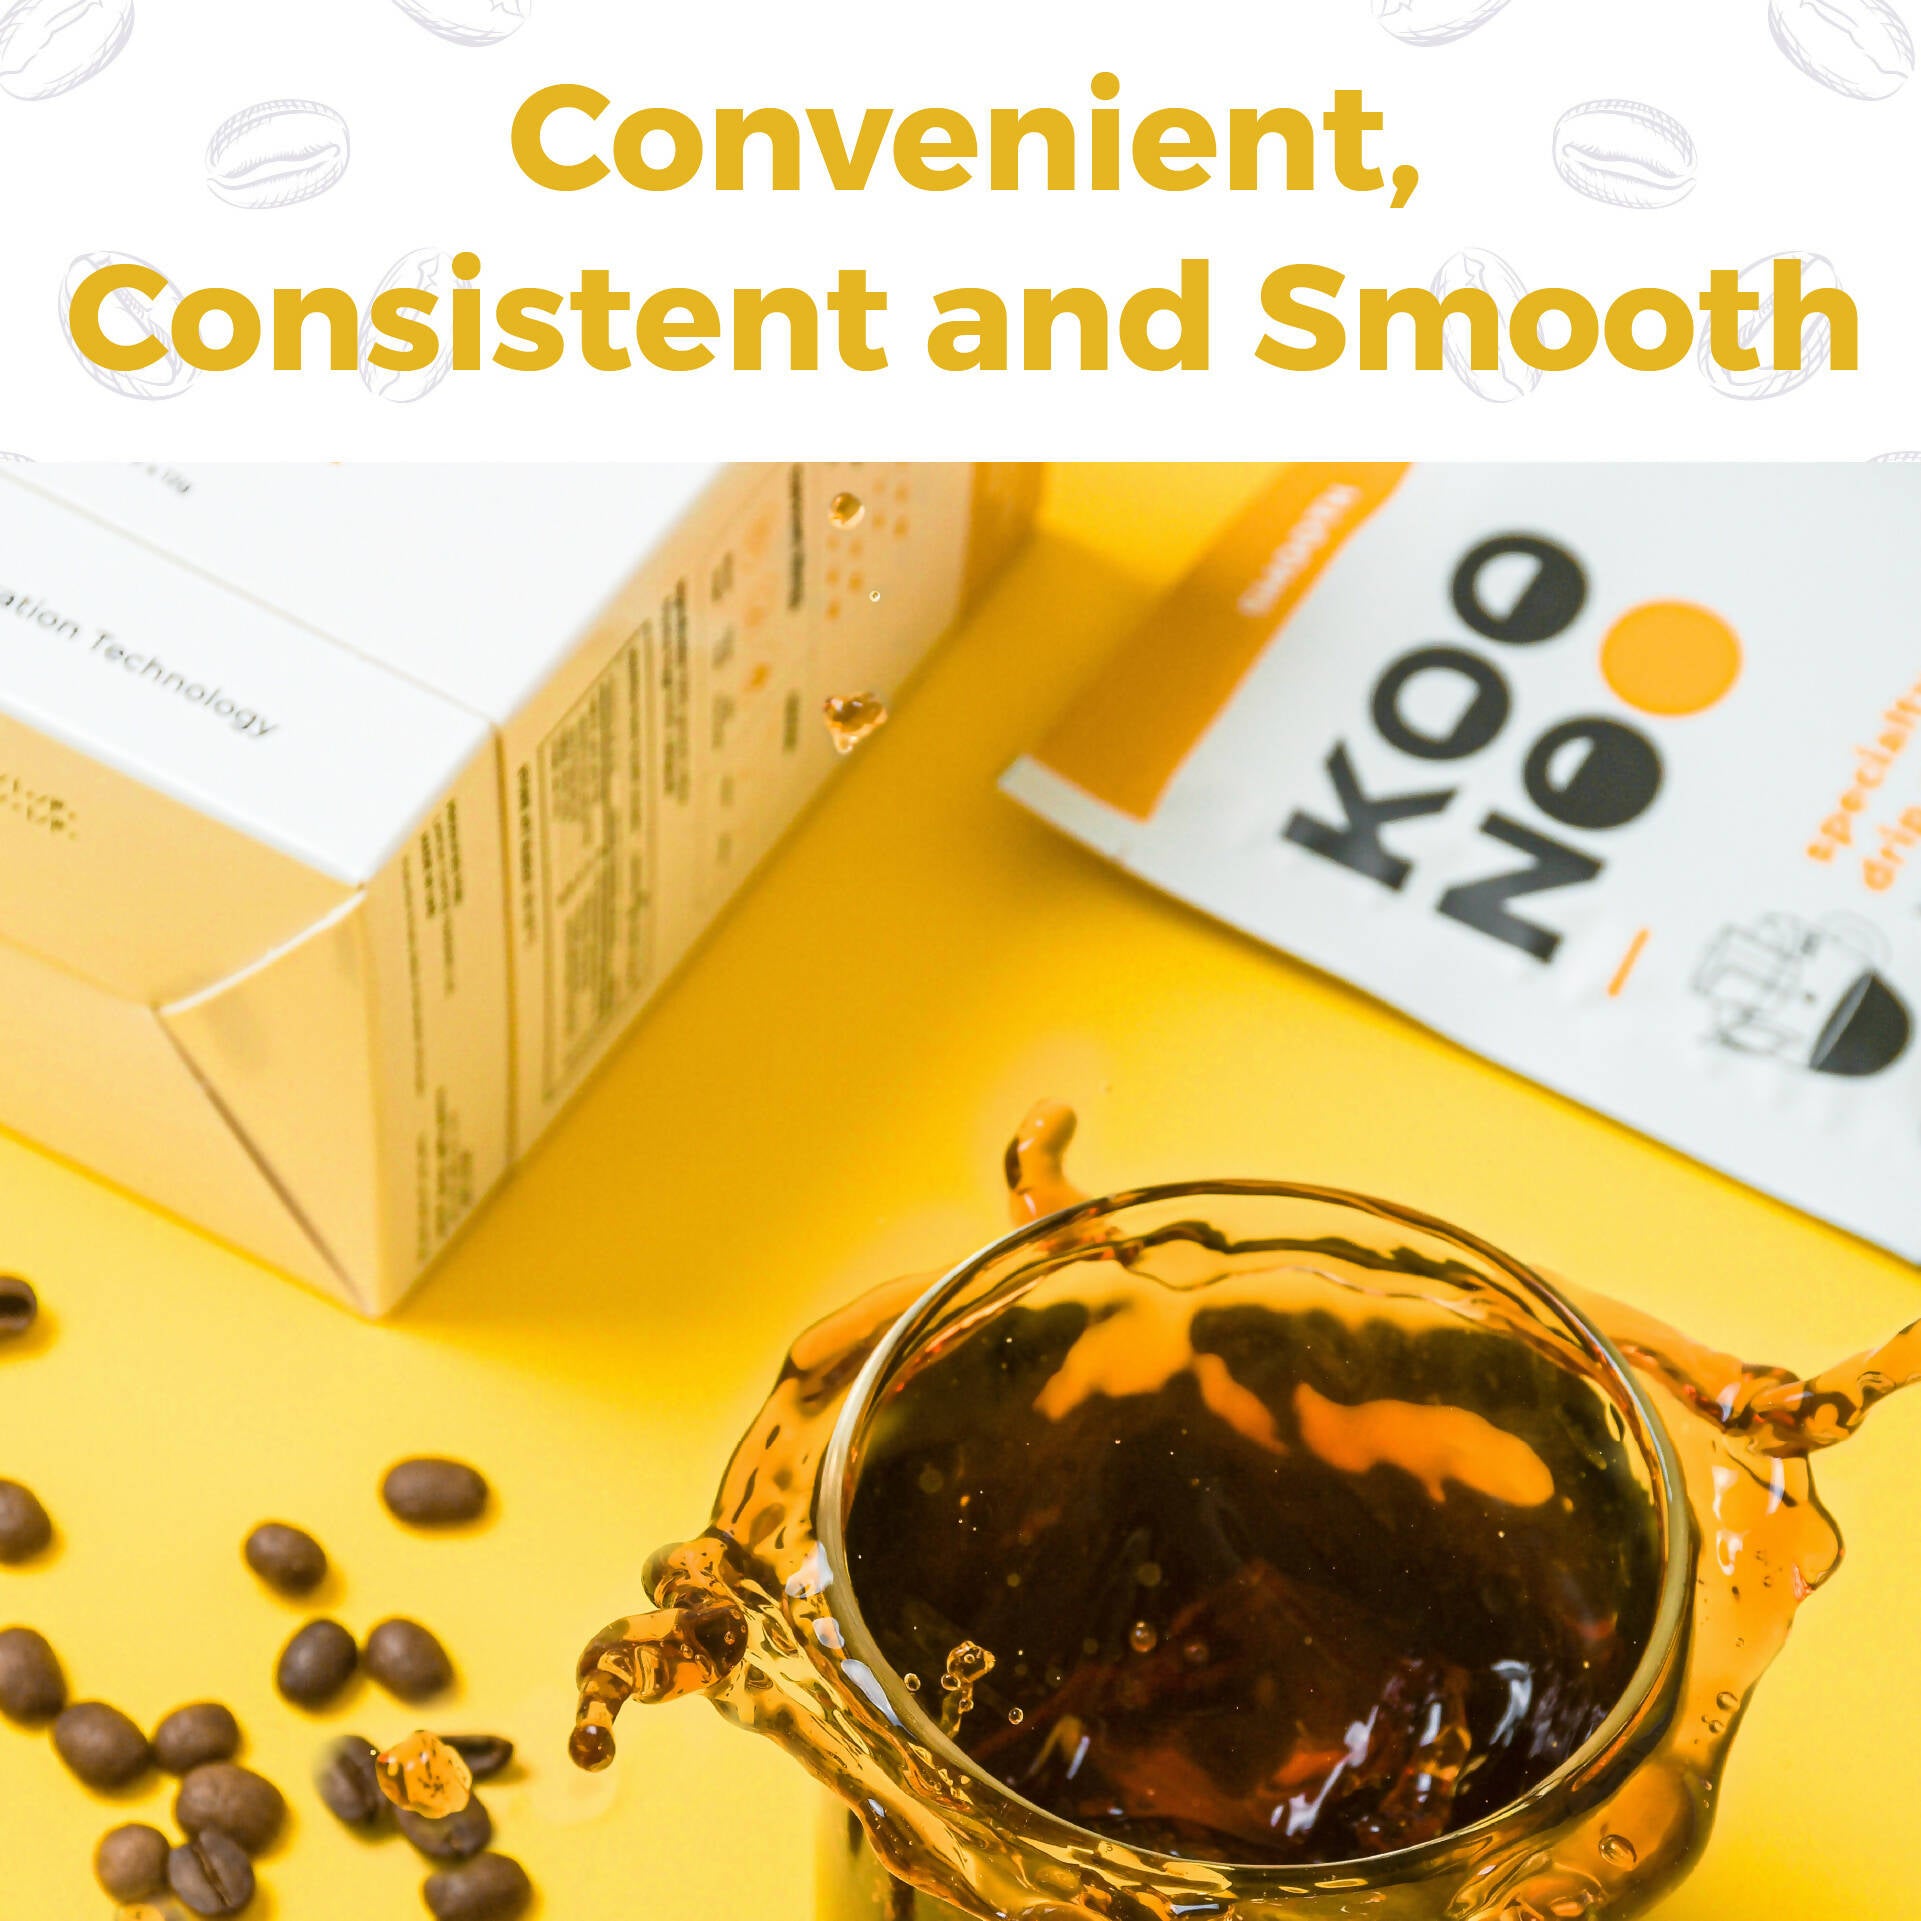 KOONOO Smooth | Medium Roast | 7 x 12g Sachets | Specialty Drip Coffee | Made in UAE - BeanBurds Koonoo